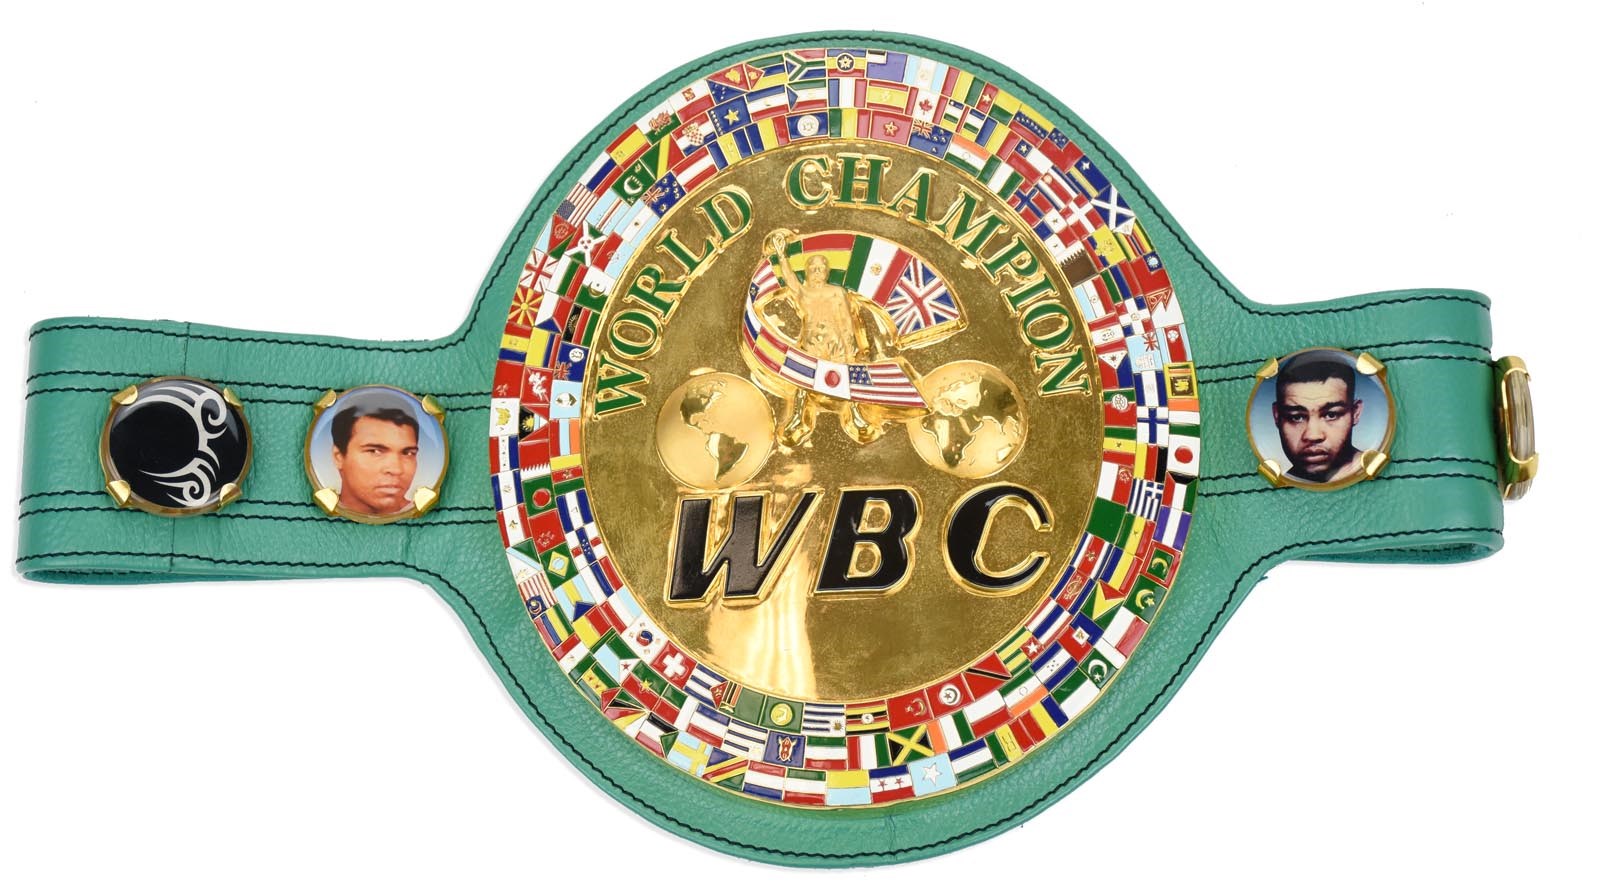 Muhammad Ali & Boxing - Mike Tyson WBC Lifetime Achievement Award Belt (Photo-Matched & Tyson LOA)